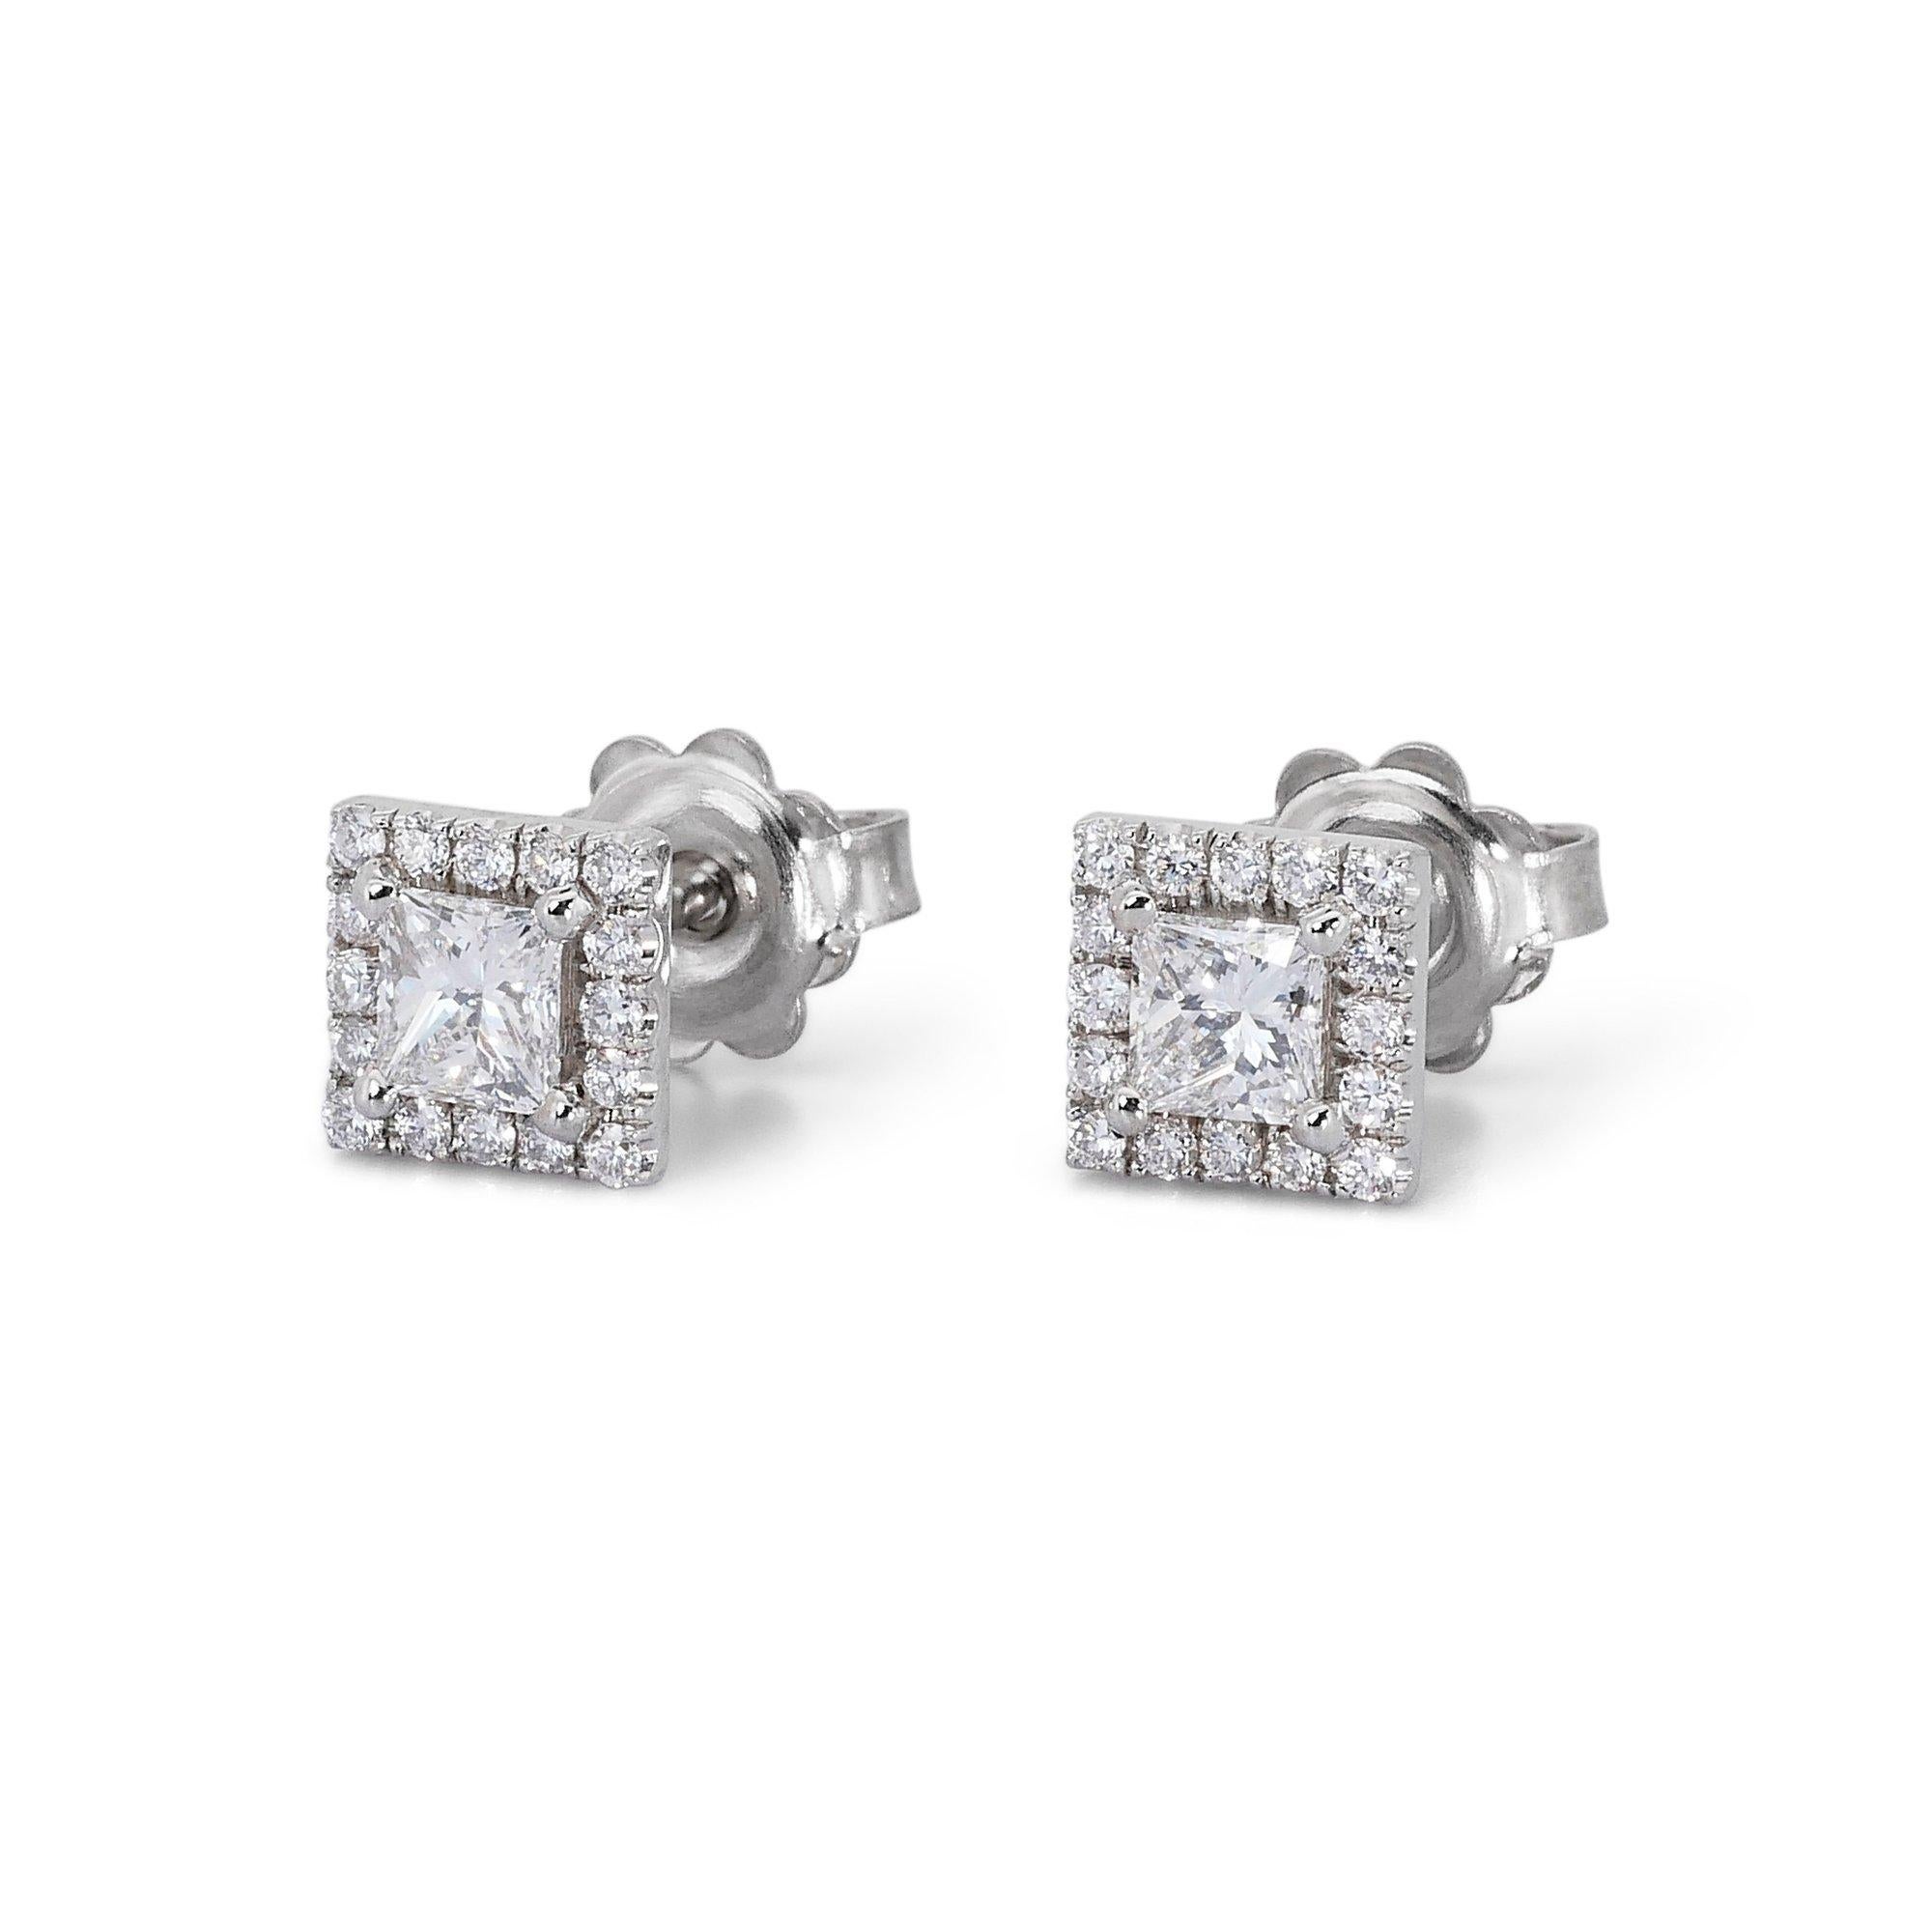 Bezaubernde 1,33ct Diamant-Halo-Ohrstecker in 18k Weißgold - GIA zertifiziert 

Diese bezaubernden Ohrringe sind mit einem atemberaubenden Duo aus 1,01 Karat Diamanten im Quadratschliff besetzt. Die Brillanz der Mittelsteine wird durch einen Kranz